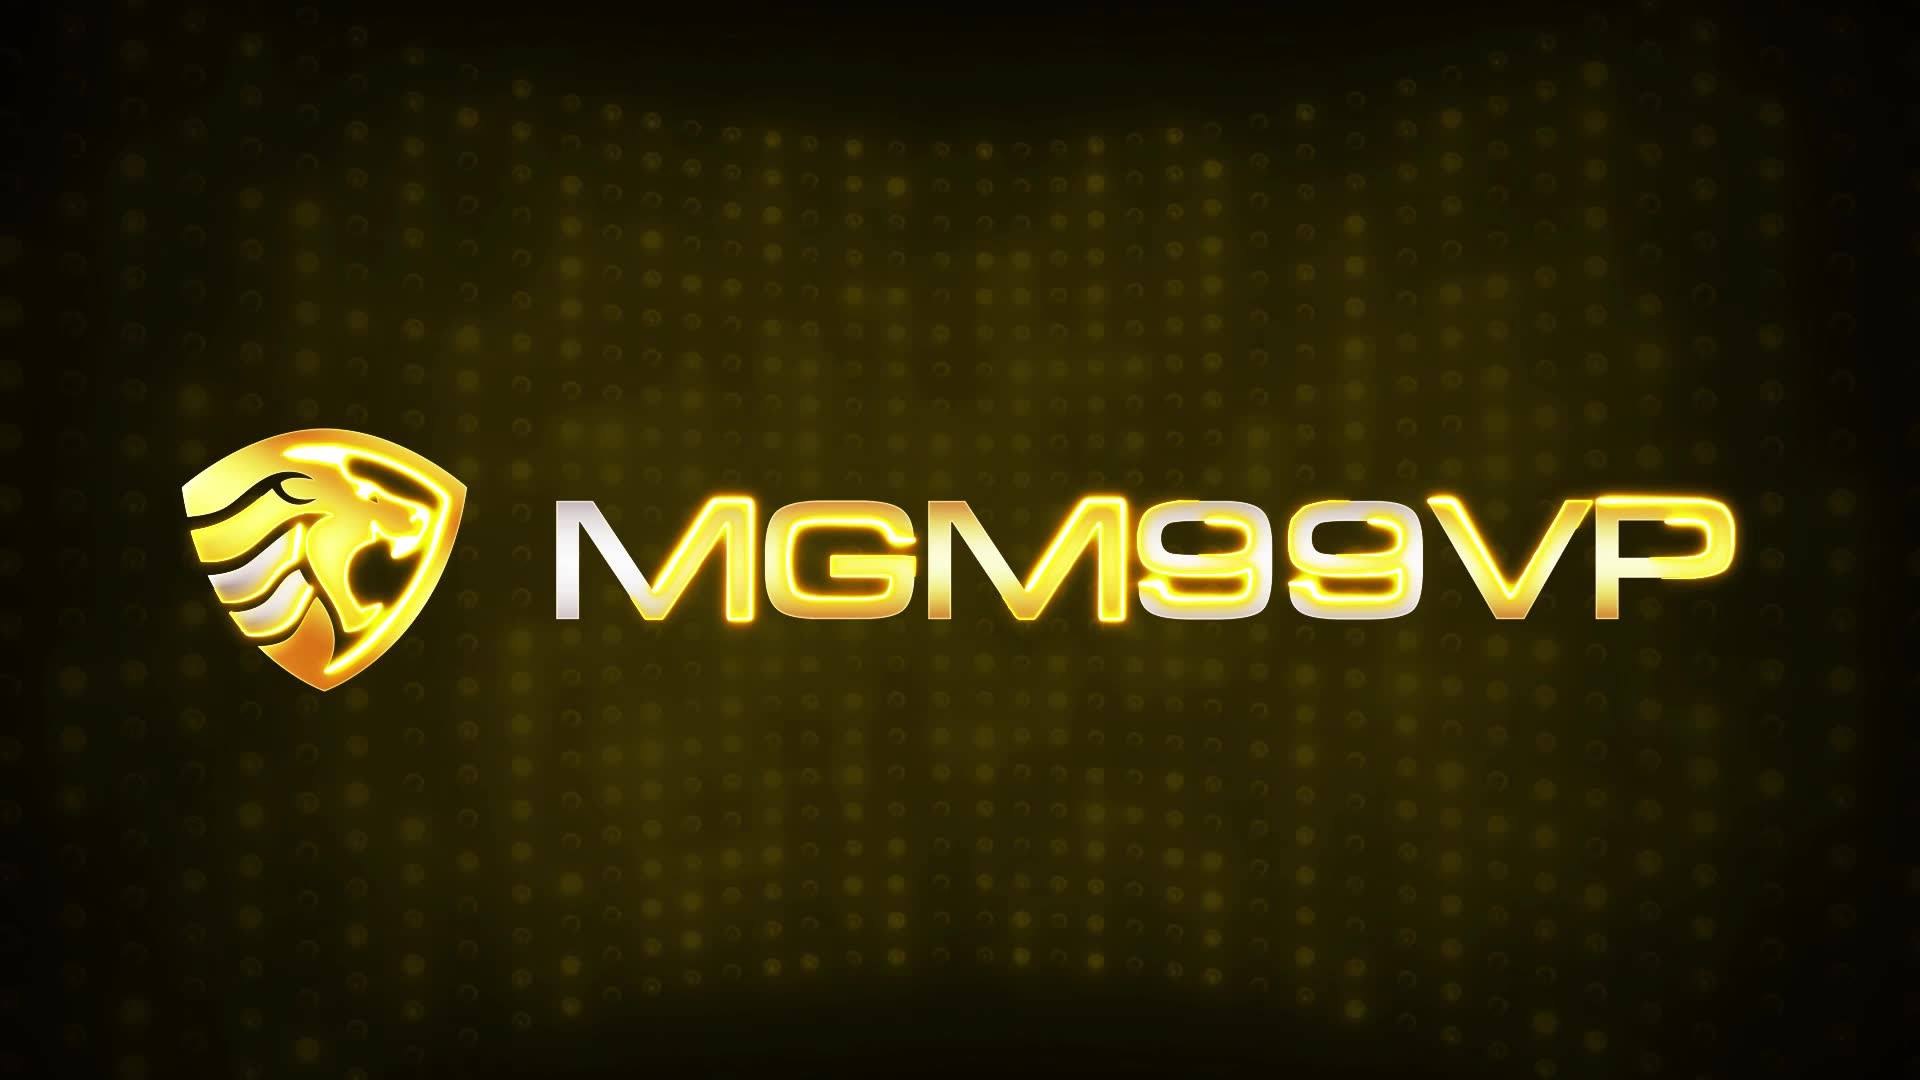 MGM99VP MGM99VIP